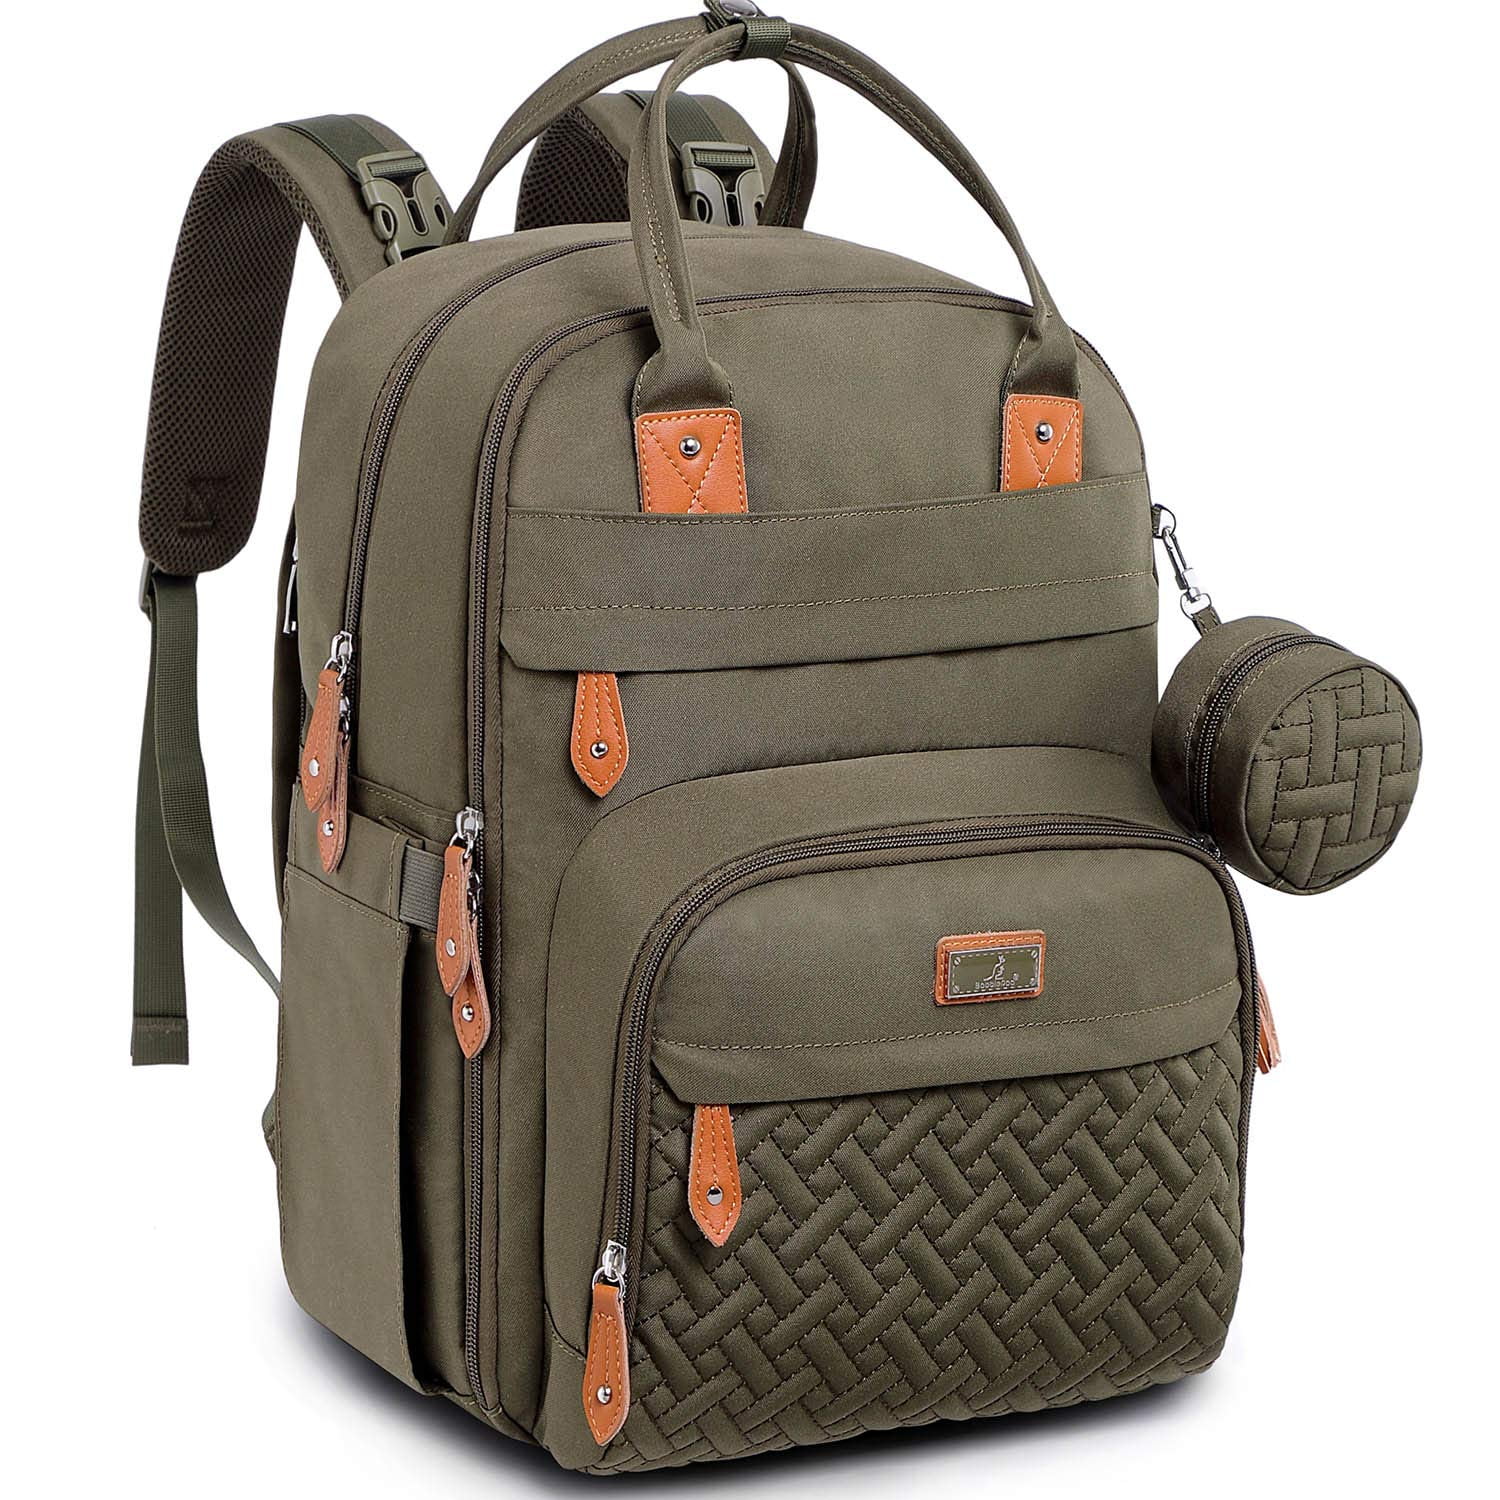 BabbleRoo Baby Diaper Bag Backpack, Waterproof Travel Bag, Unisex, Army ...